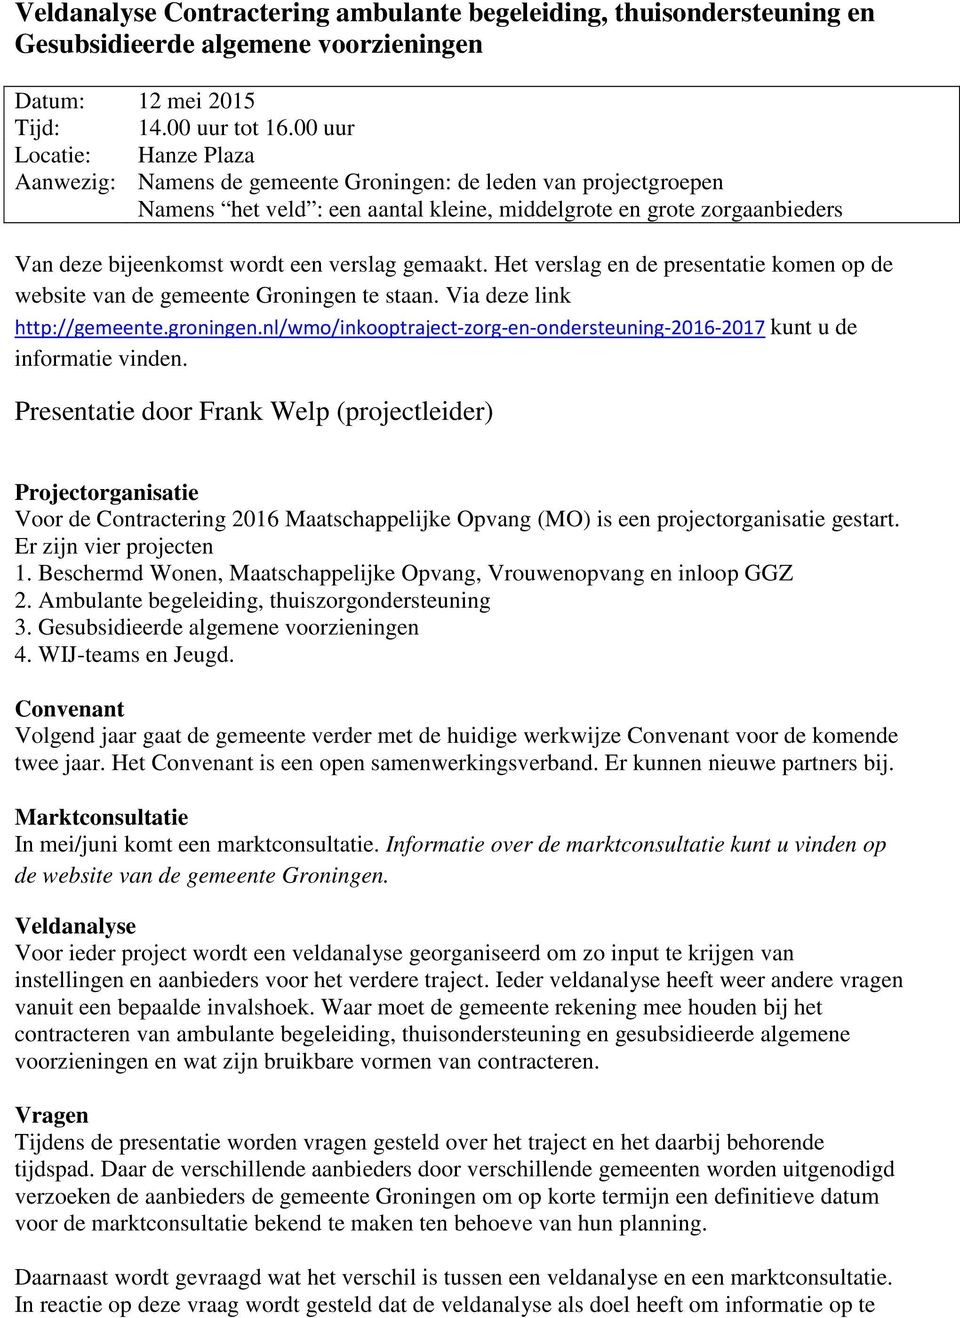 verslag gemaakt. Het verslag en de presentatie komen op de website van de gemeente Groningen te staan. Via deze link http://gemeente.groningen.